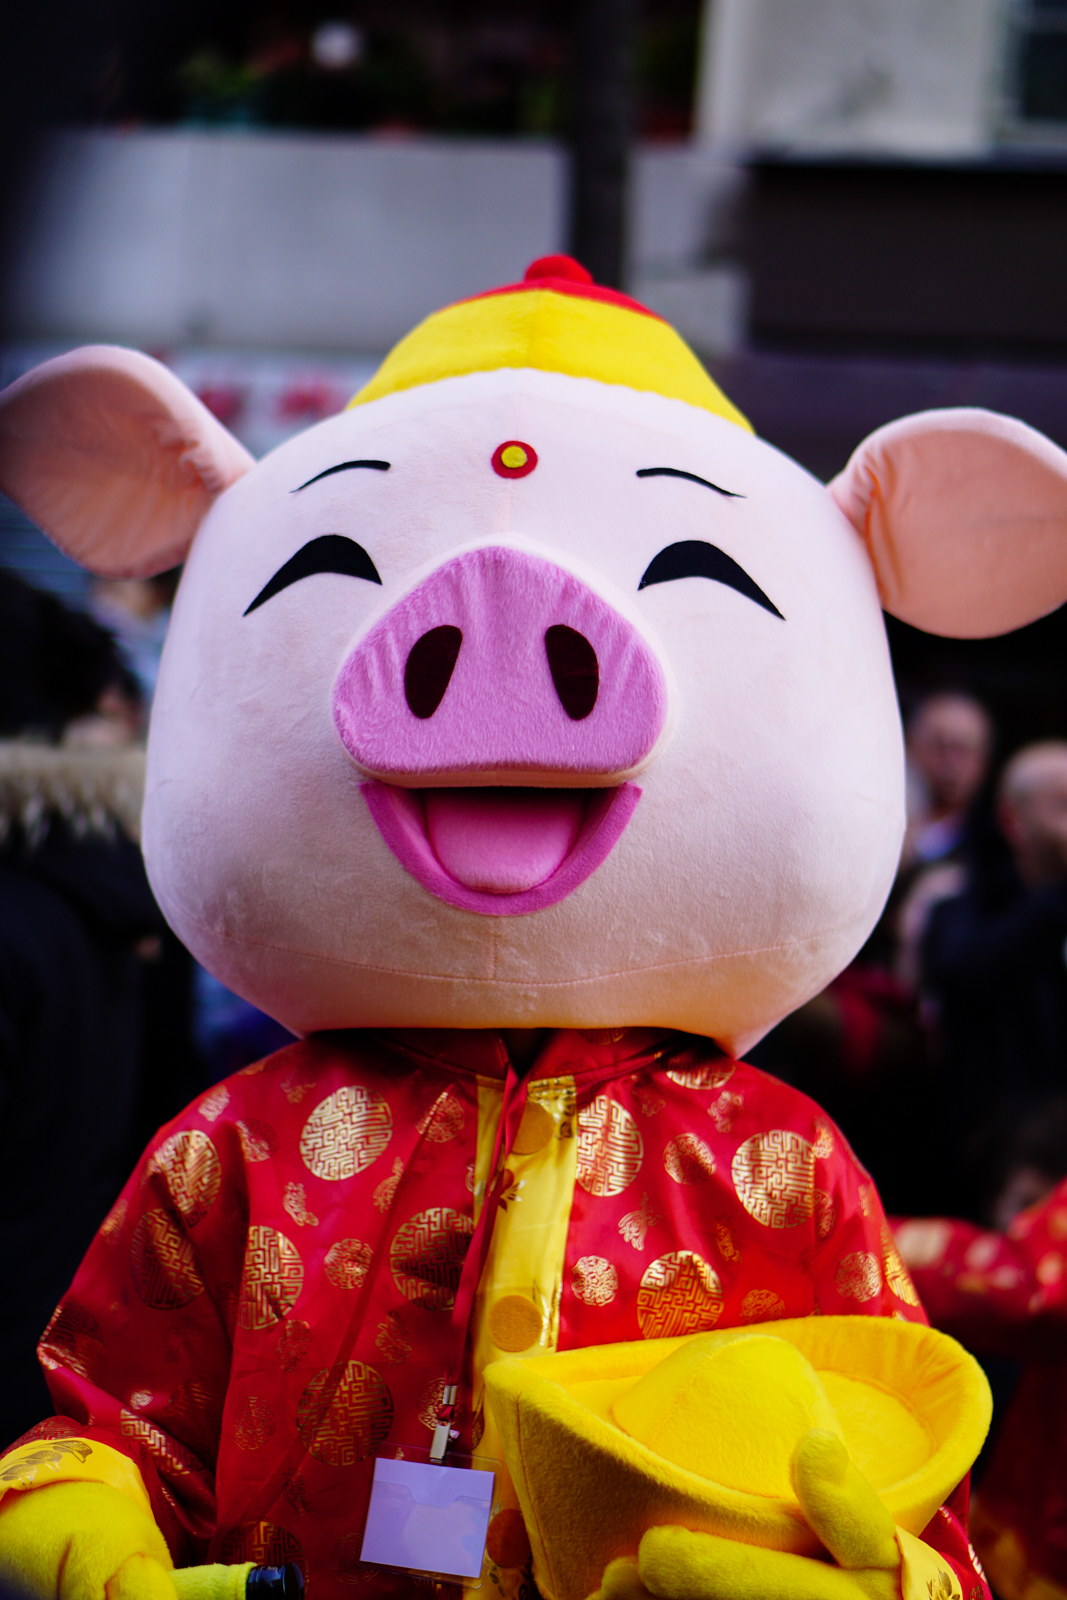 nouvel an chinois paris, nouvel an chinois, nouvel an chinois 2019, paris chinatown, année cochon, festivités paris, défilé paris, cortège paris, chinese new year paris